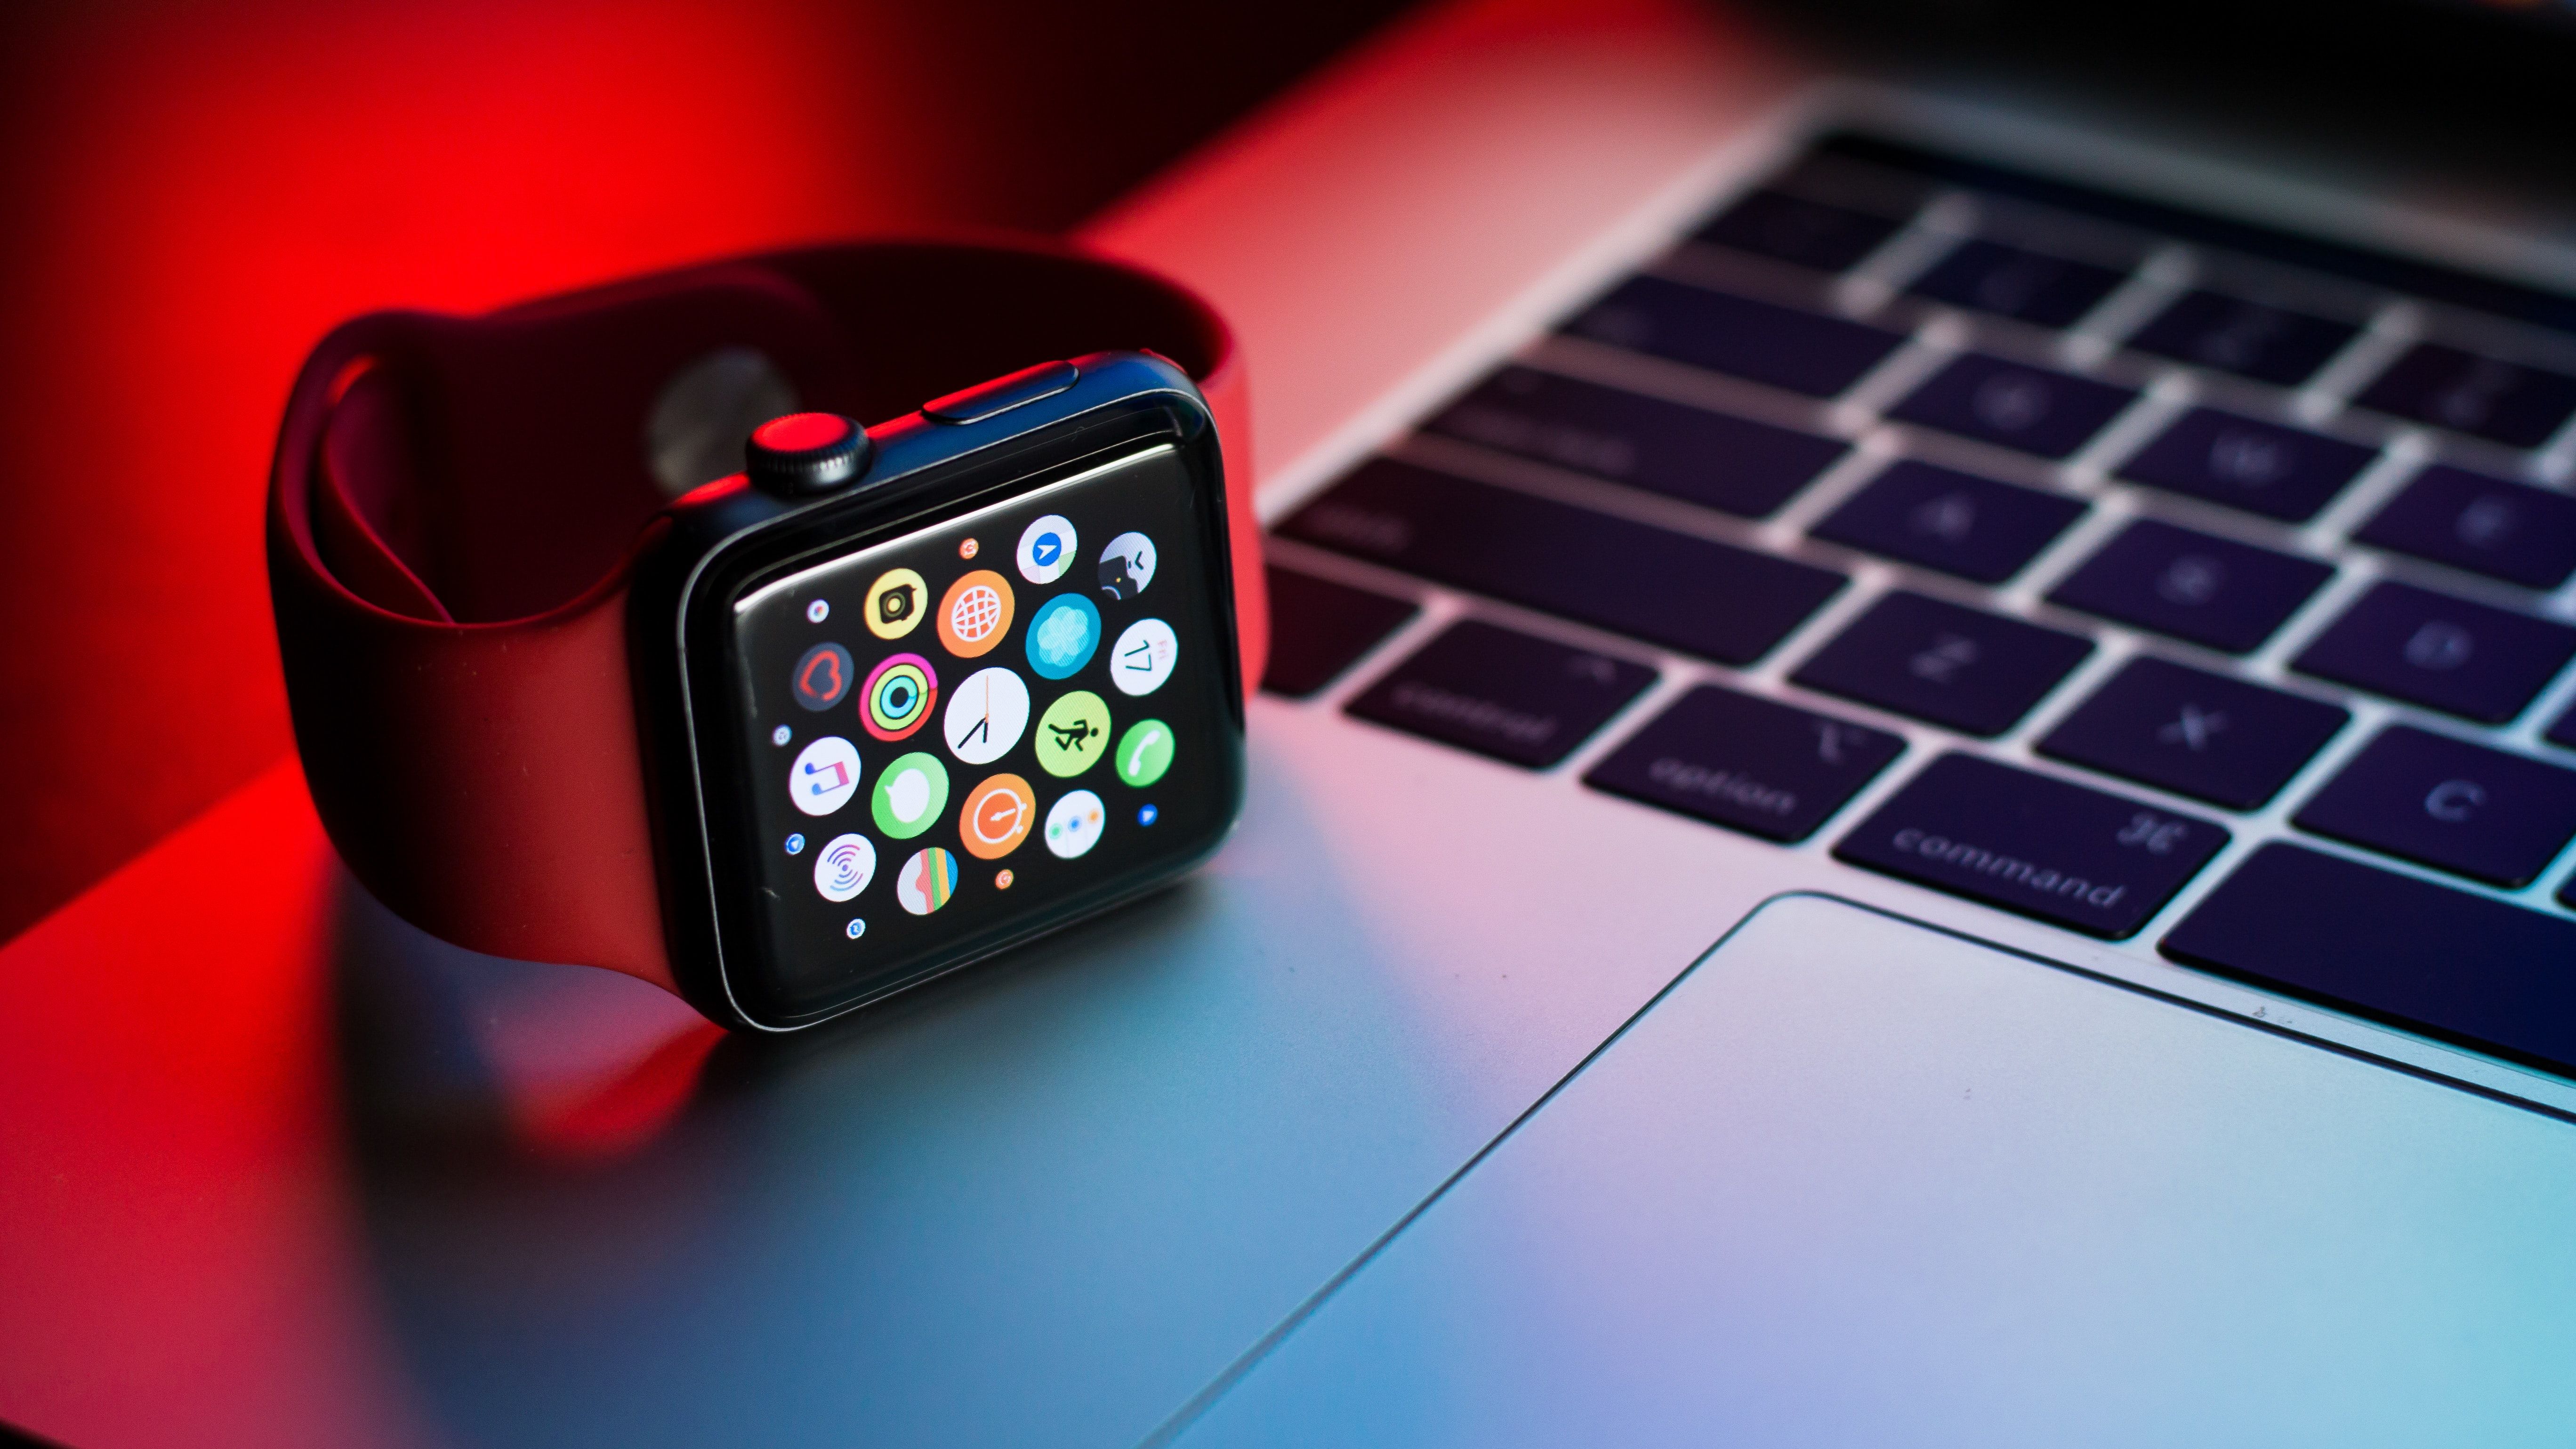 Apple Watch on Mac Keyboard - Dovresti comprare un Apple Watch? 5 domande da porsi prima di farlo